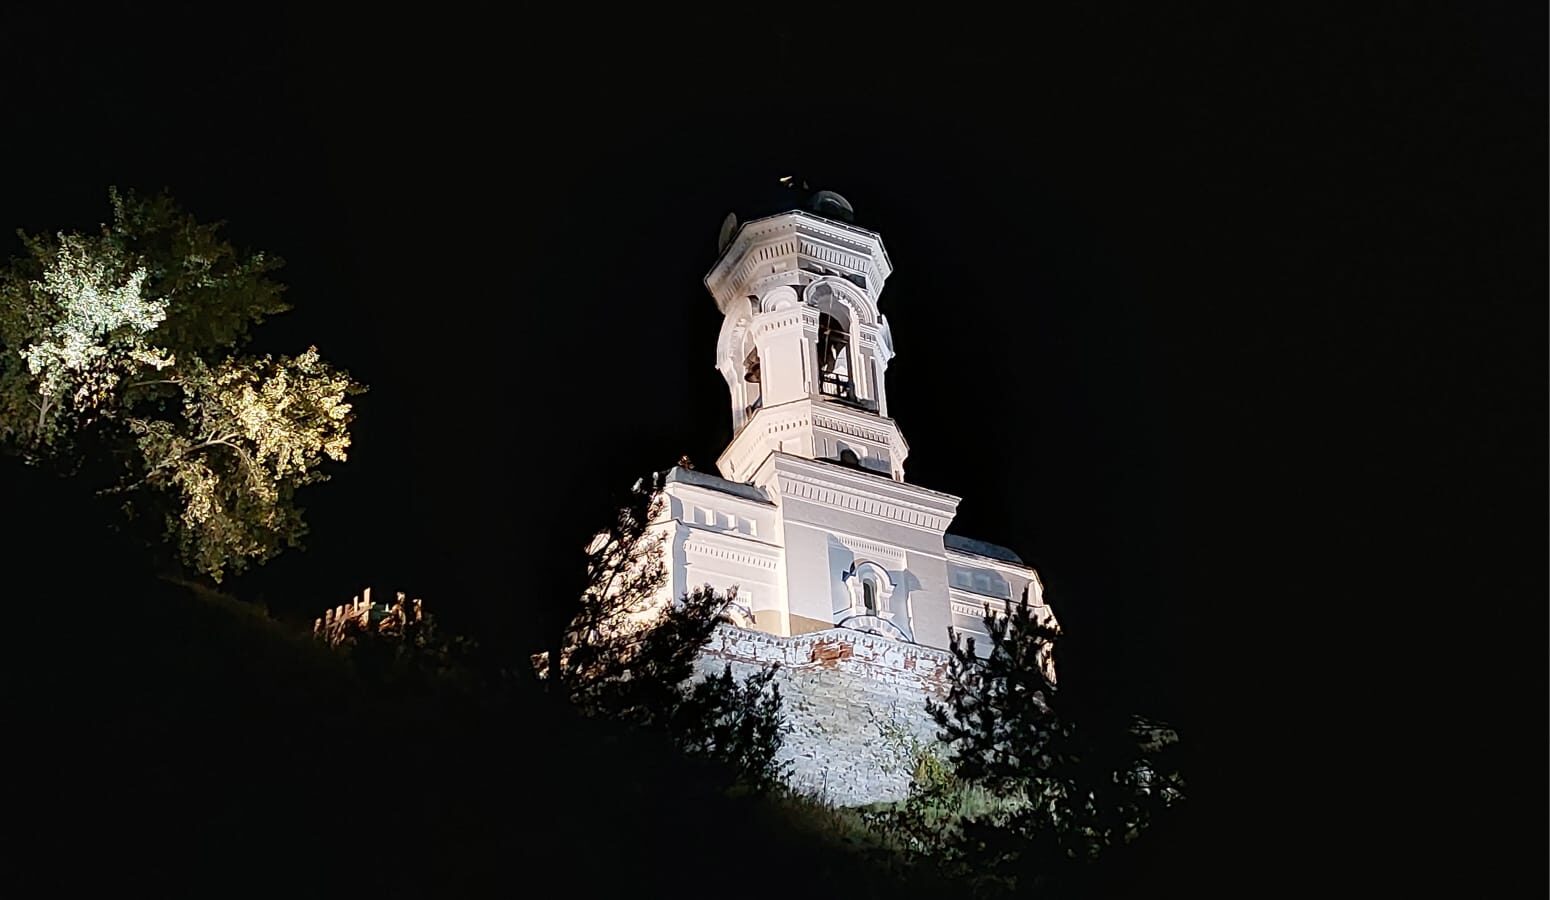 Самое первое наше фото Нагорного храма с подсветкой